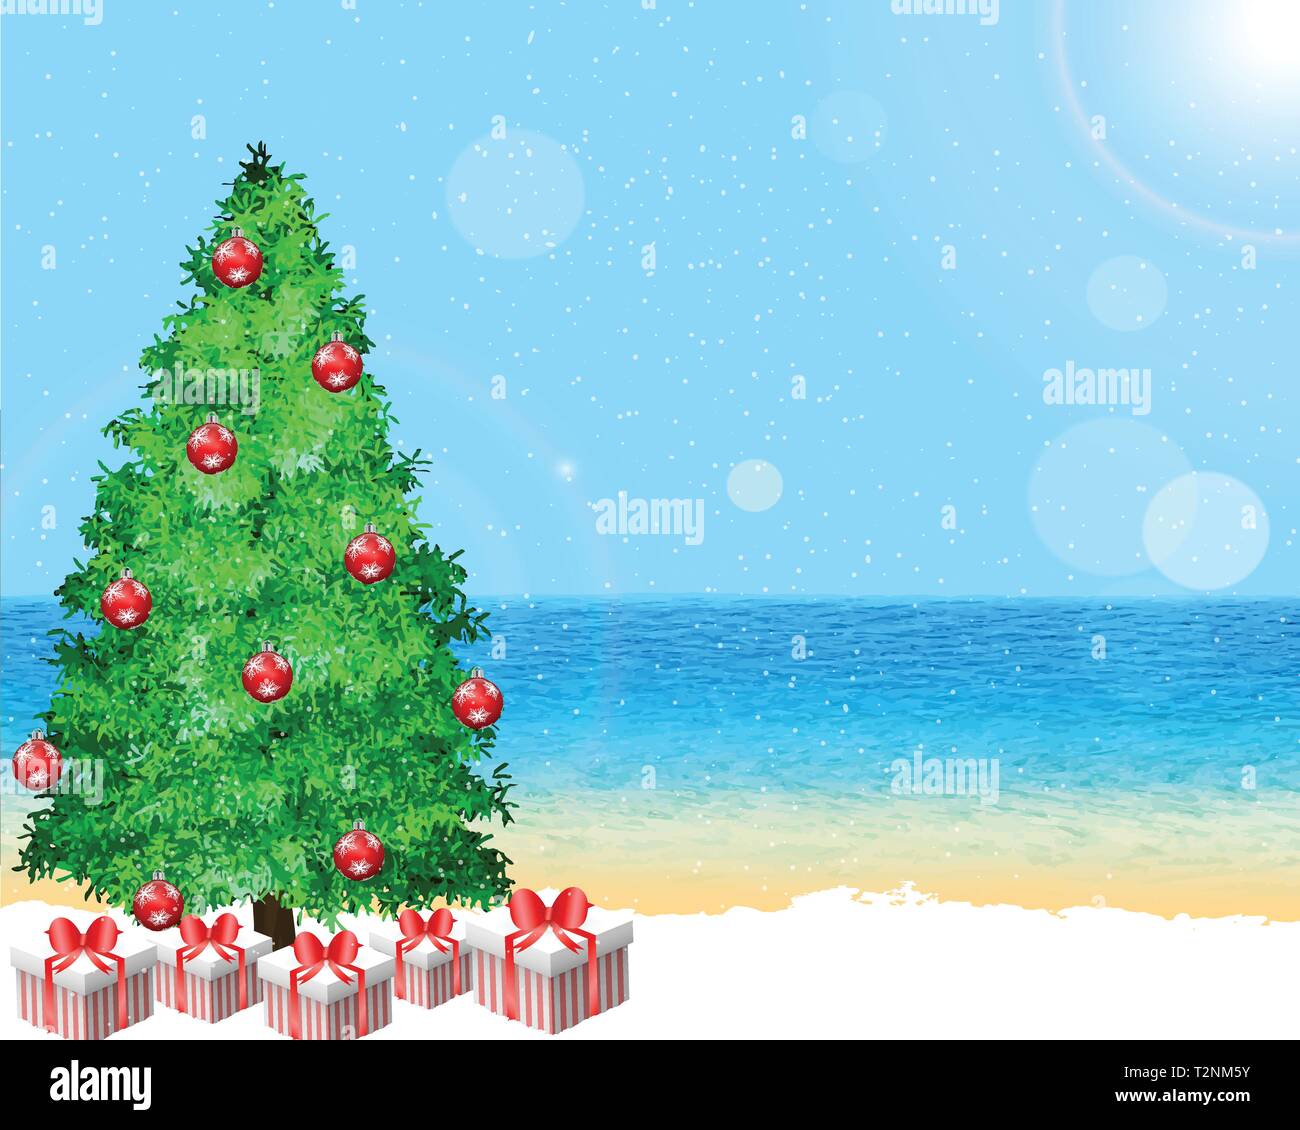 Weihnachten an der Küste. Sunny Beach in festlicher Stimmung dekoriert mit Pine Tree auf dem Schnee. Geschenkpackungen unter der Tanne in Schneefall. Vector Illustration, e Stock Vektor